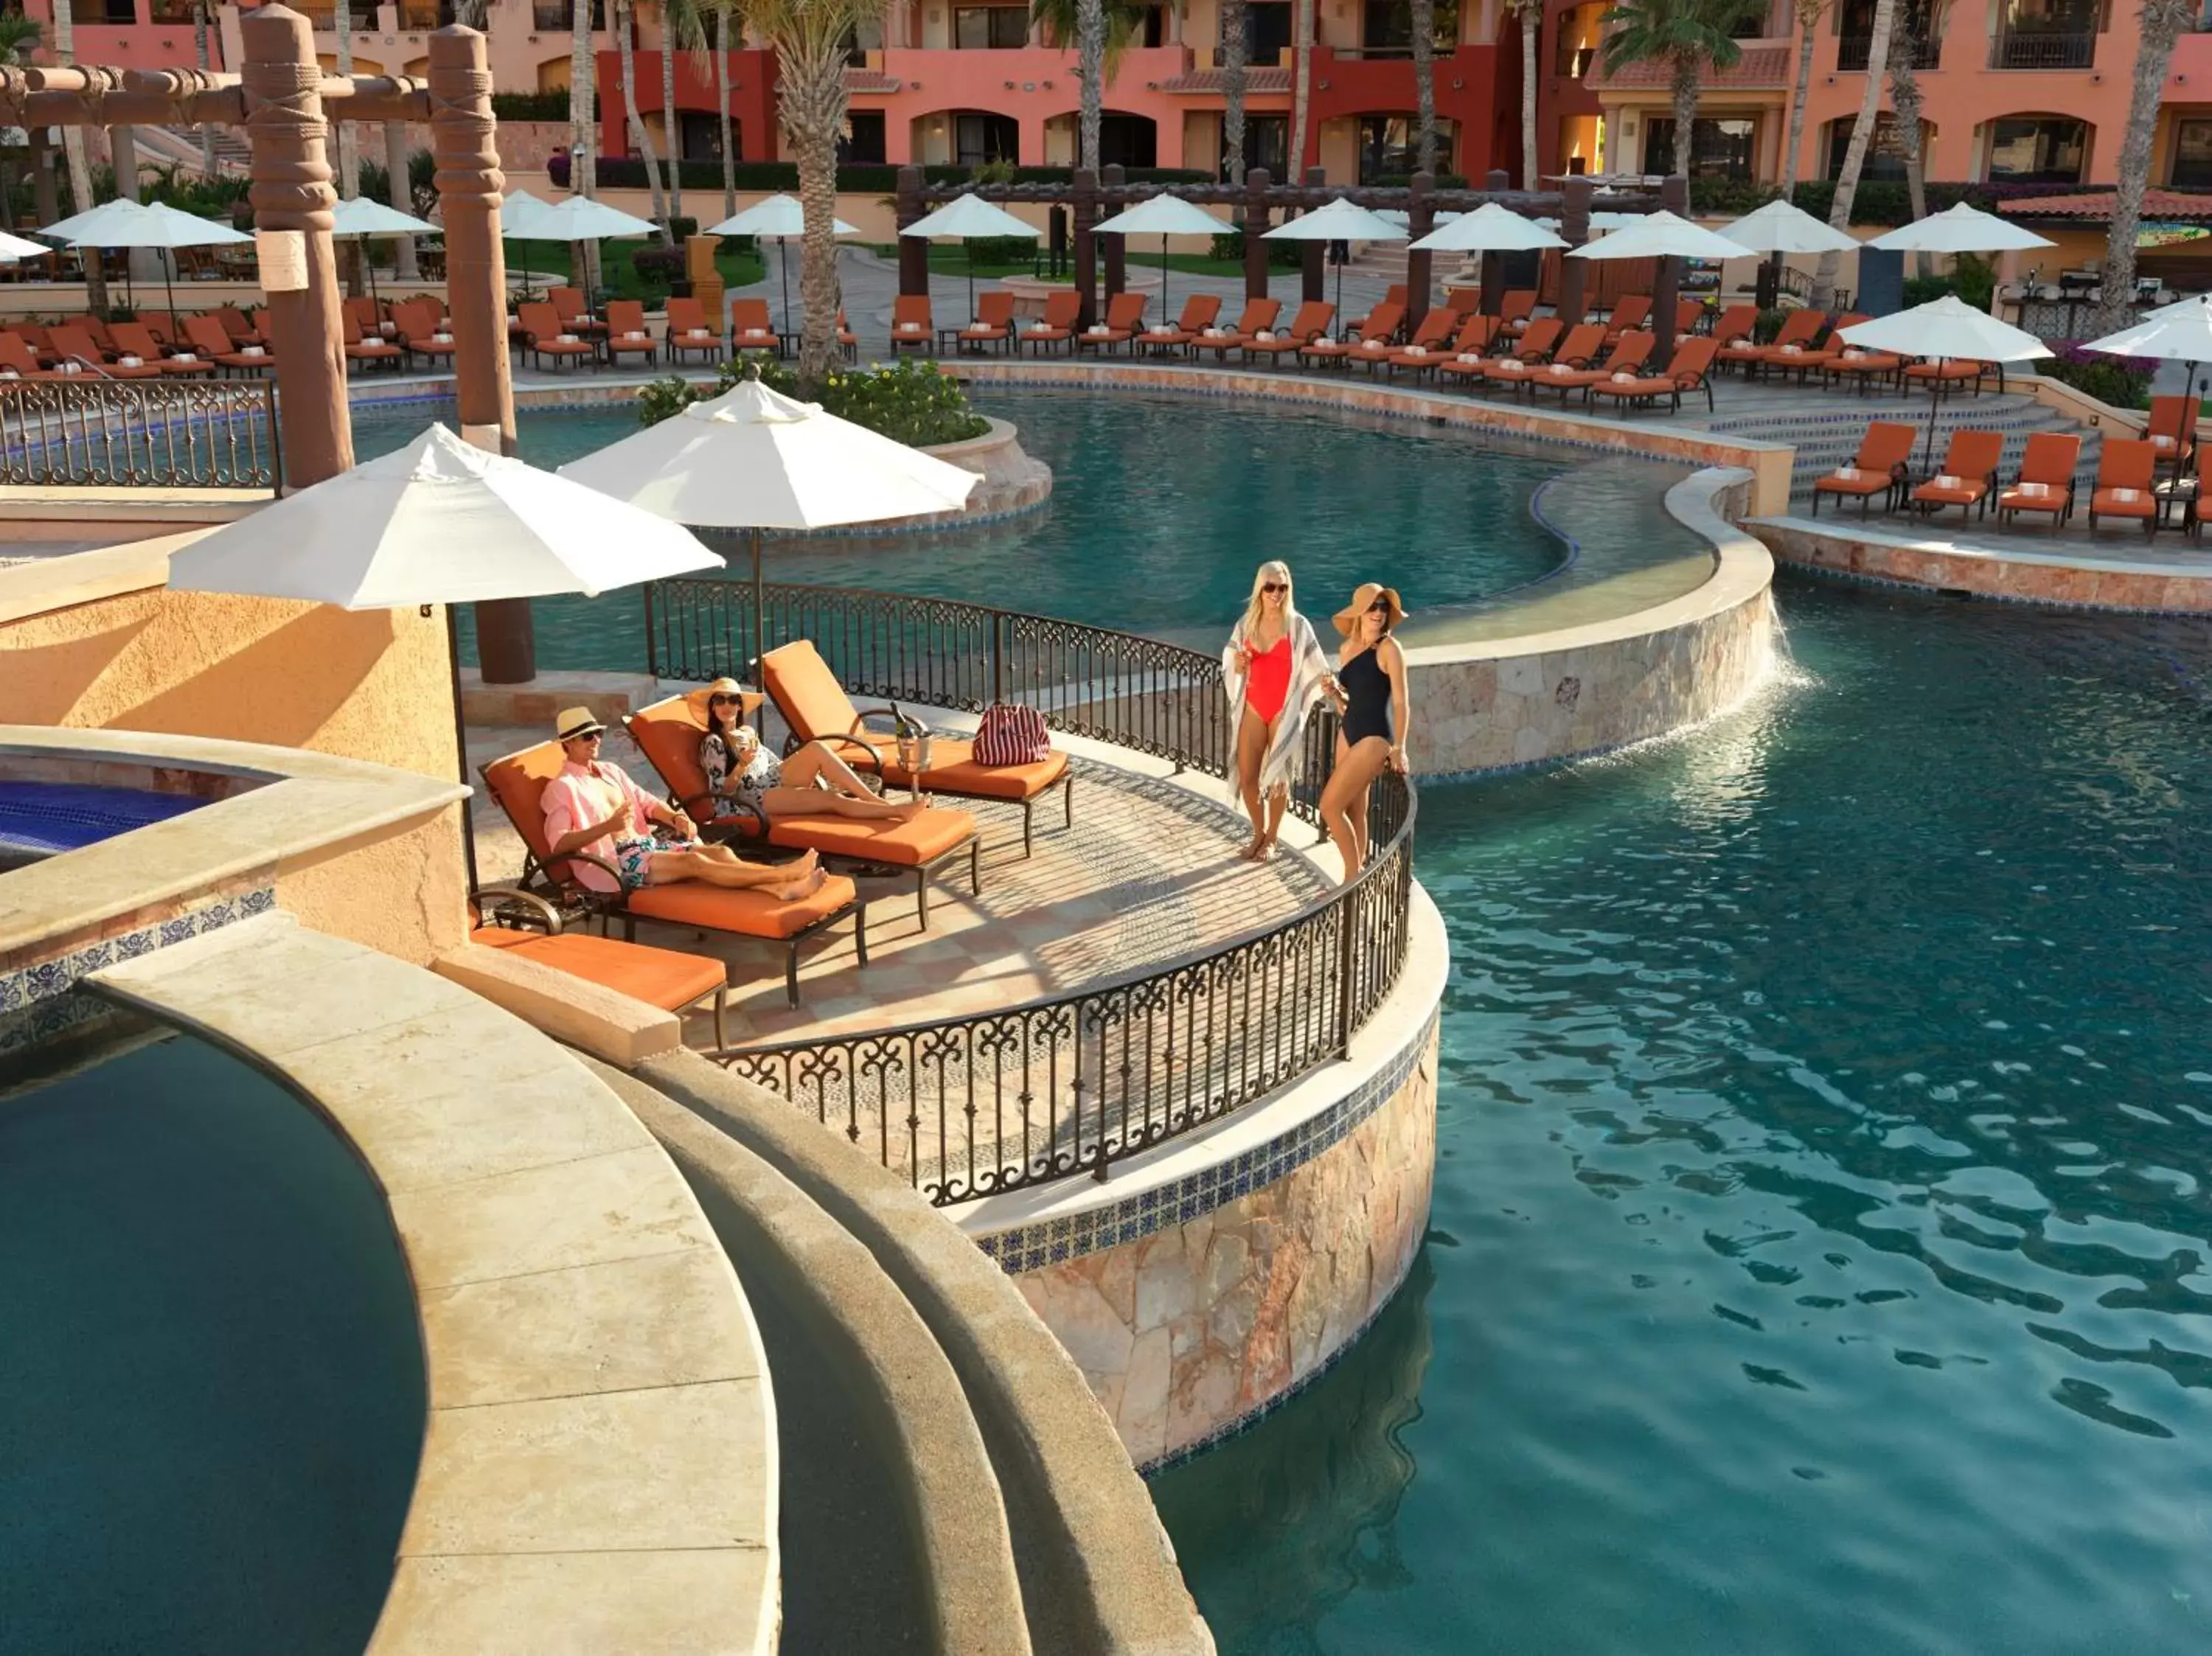 Swimming pool in Playa Grande Resort